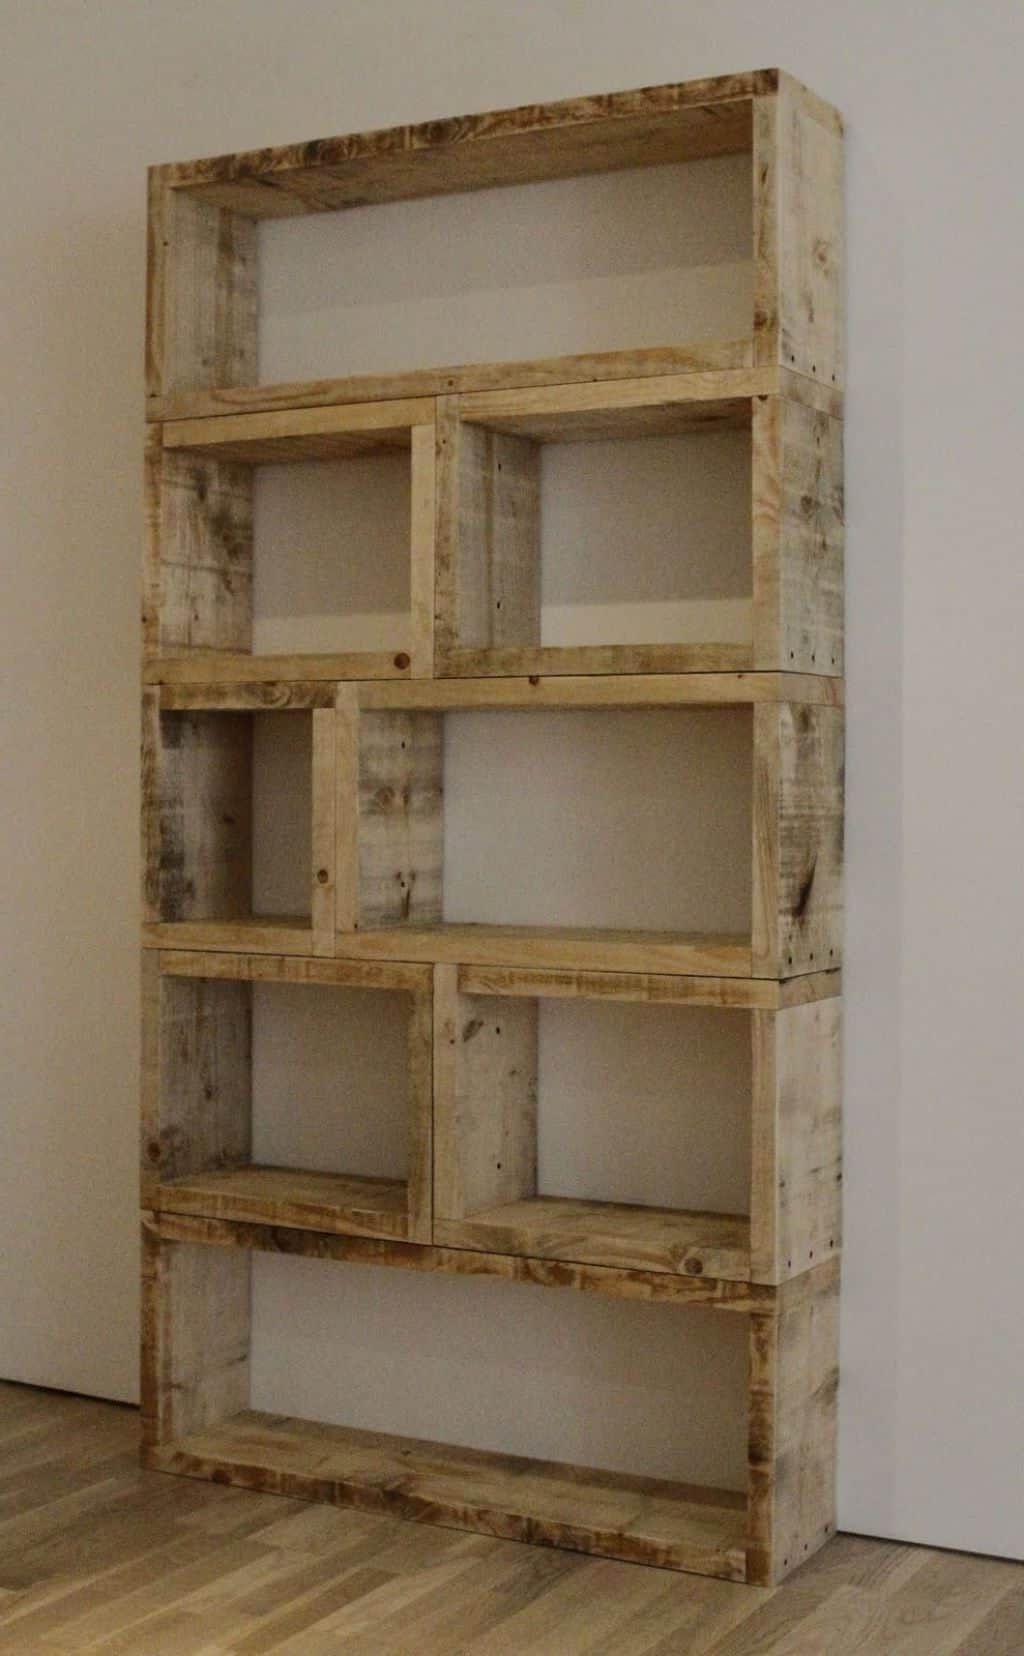 Handmade Bookshelves Intended For Favorite Wooden Handmade Bookshelves – Create Your Handmade Bookshelves (View 3 of 15)